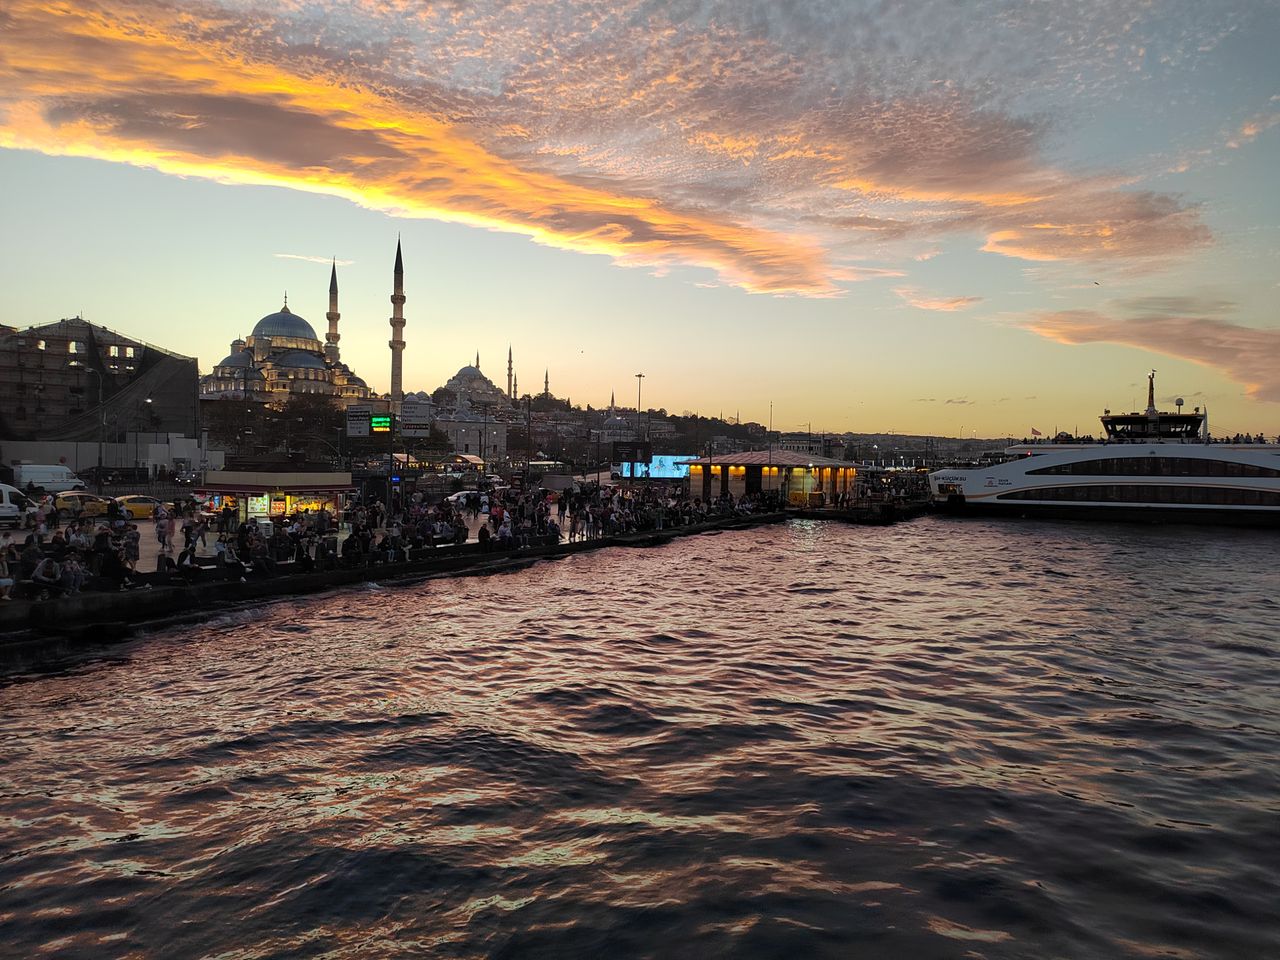 Стамбул многоликий: султаны, Босфор и сериалы | Цена 178€, отзывы, описание экскурсии